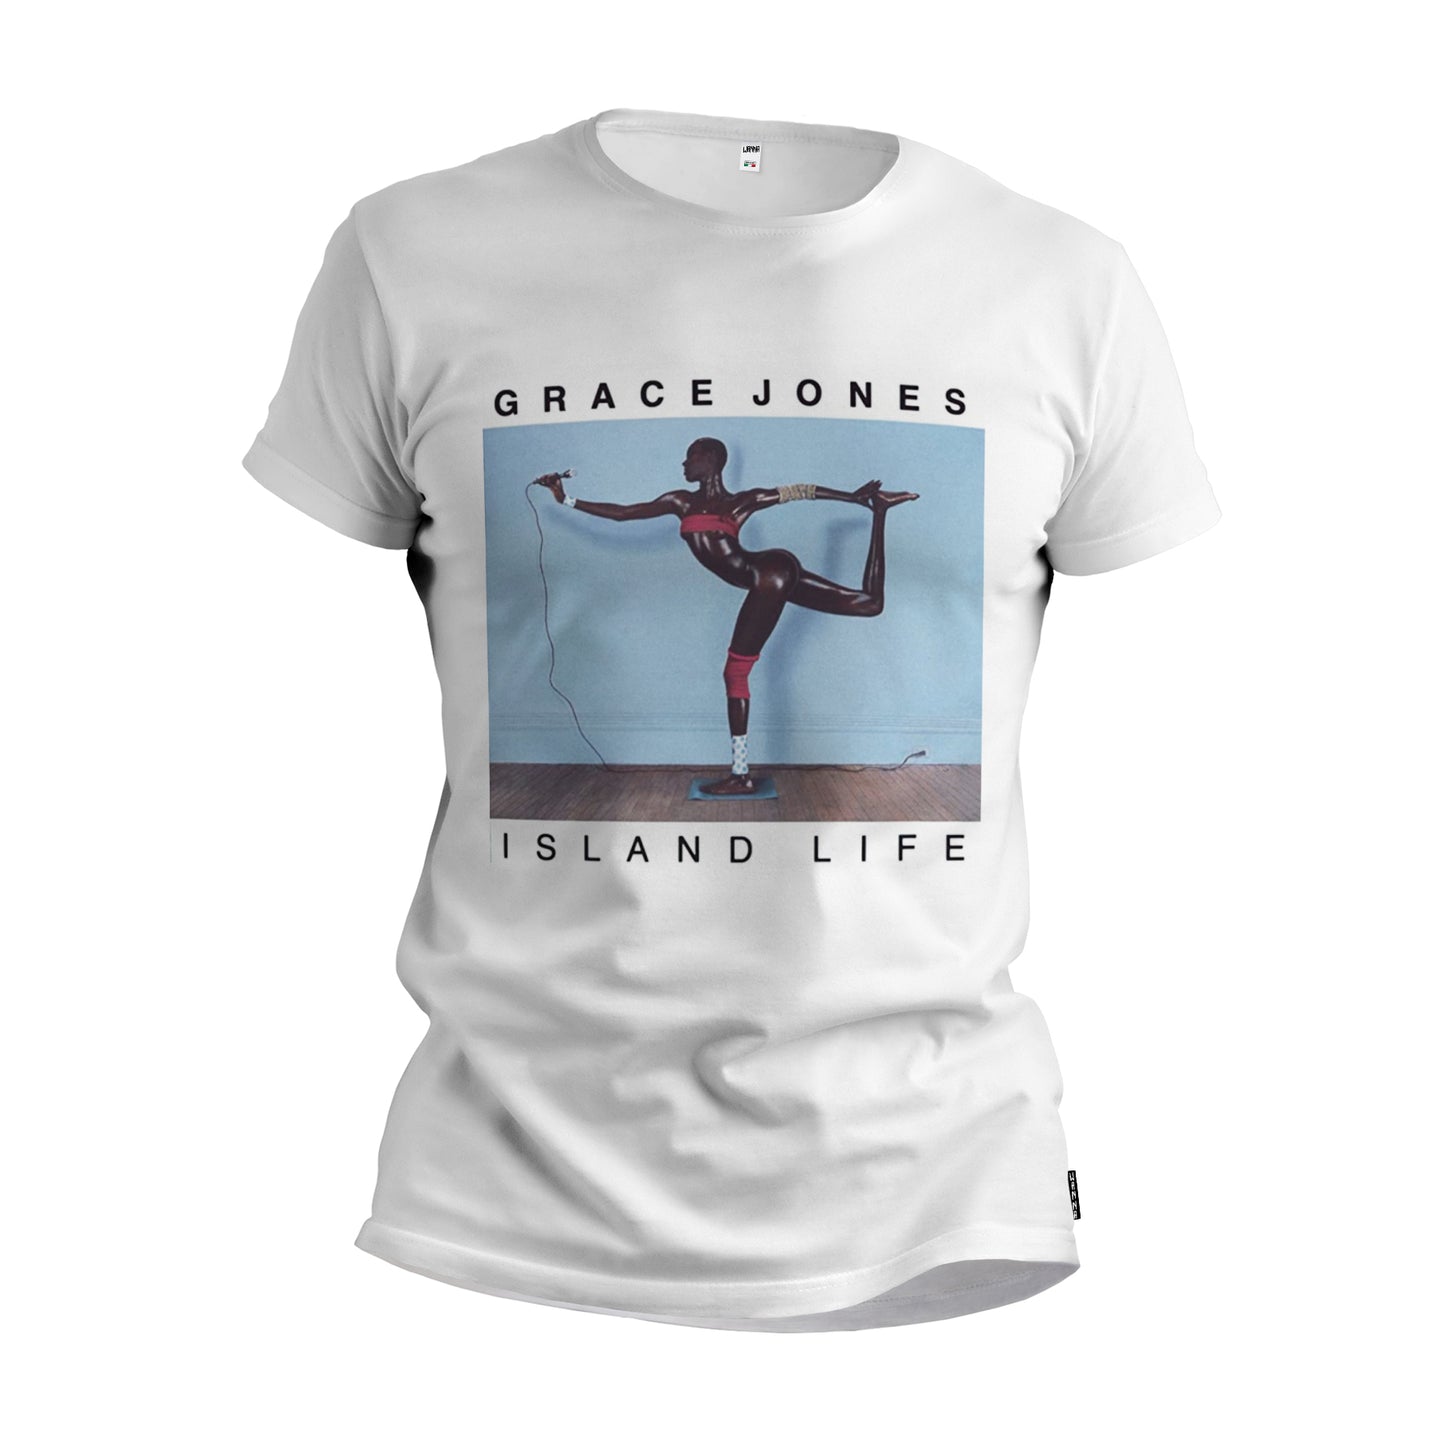 Grace jones- T-Shirt